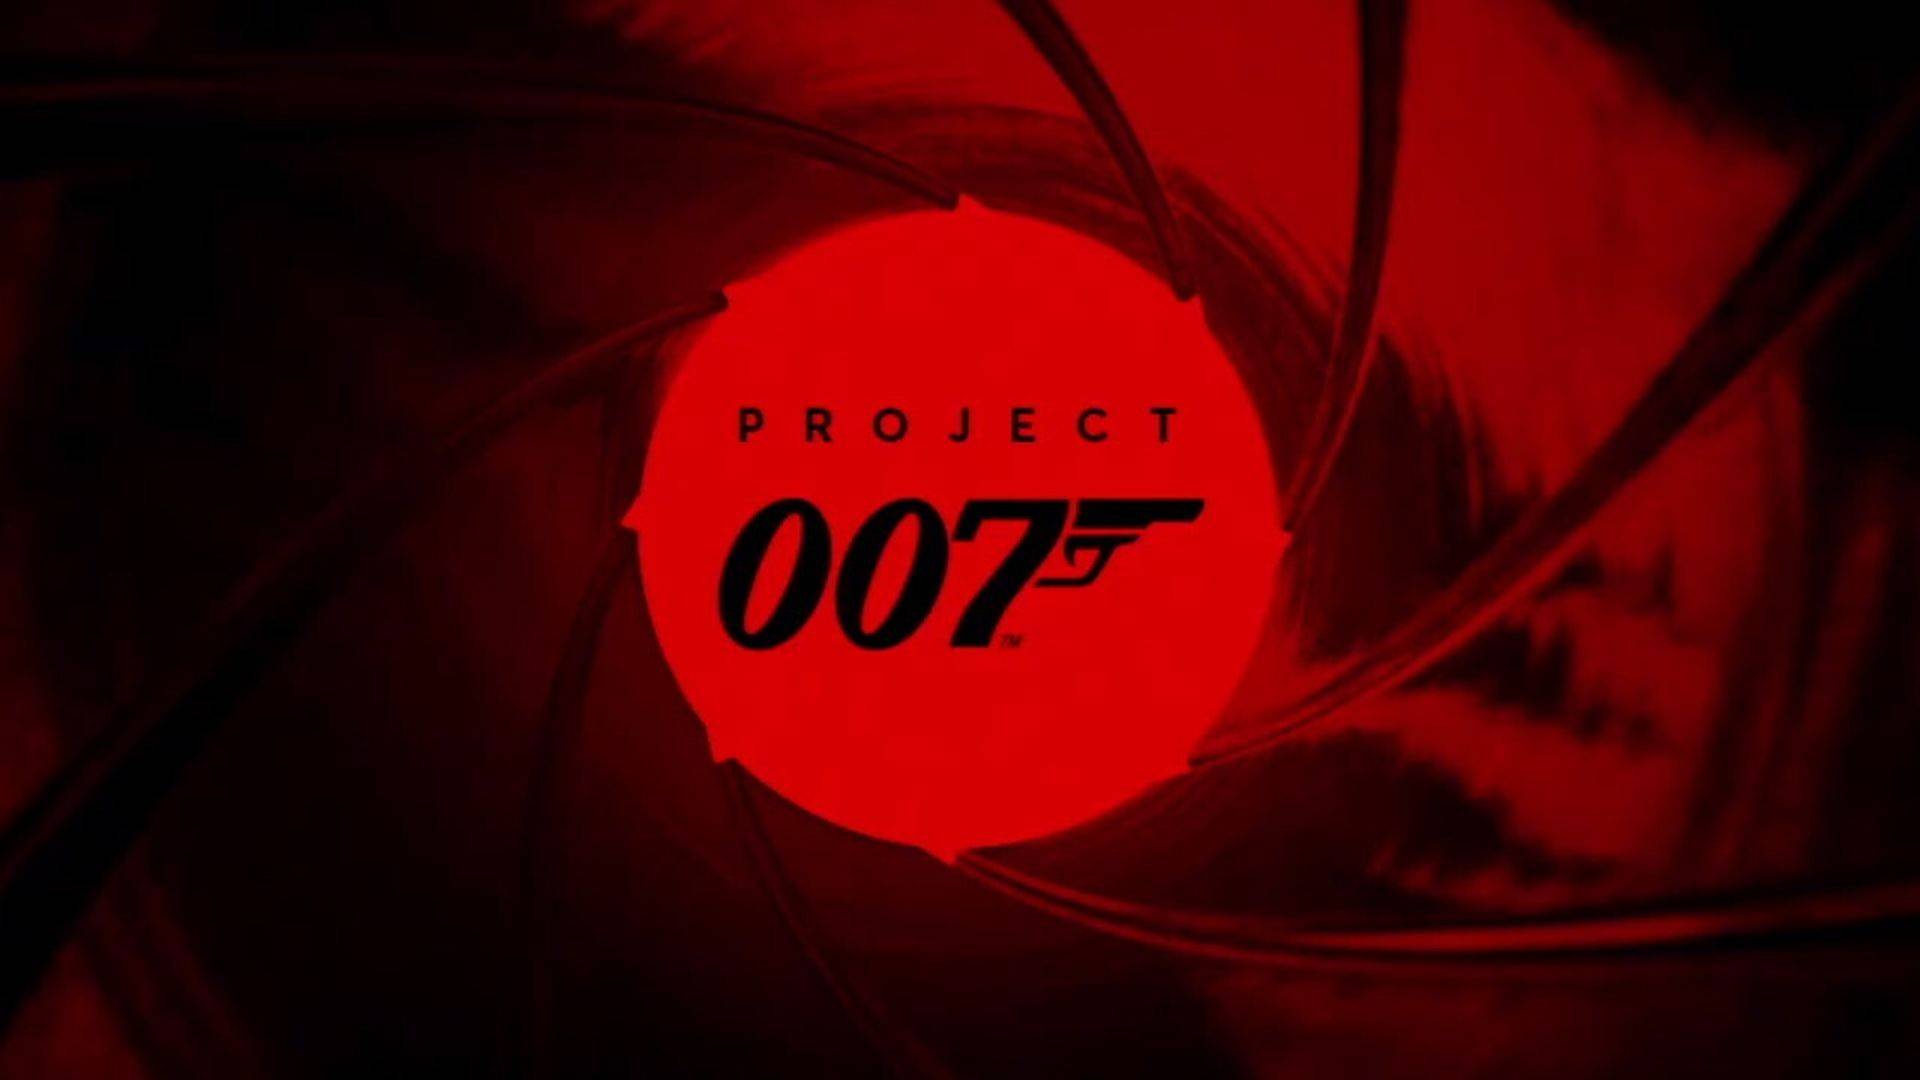 IO Interactive bastante ambiciosa com Project 007